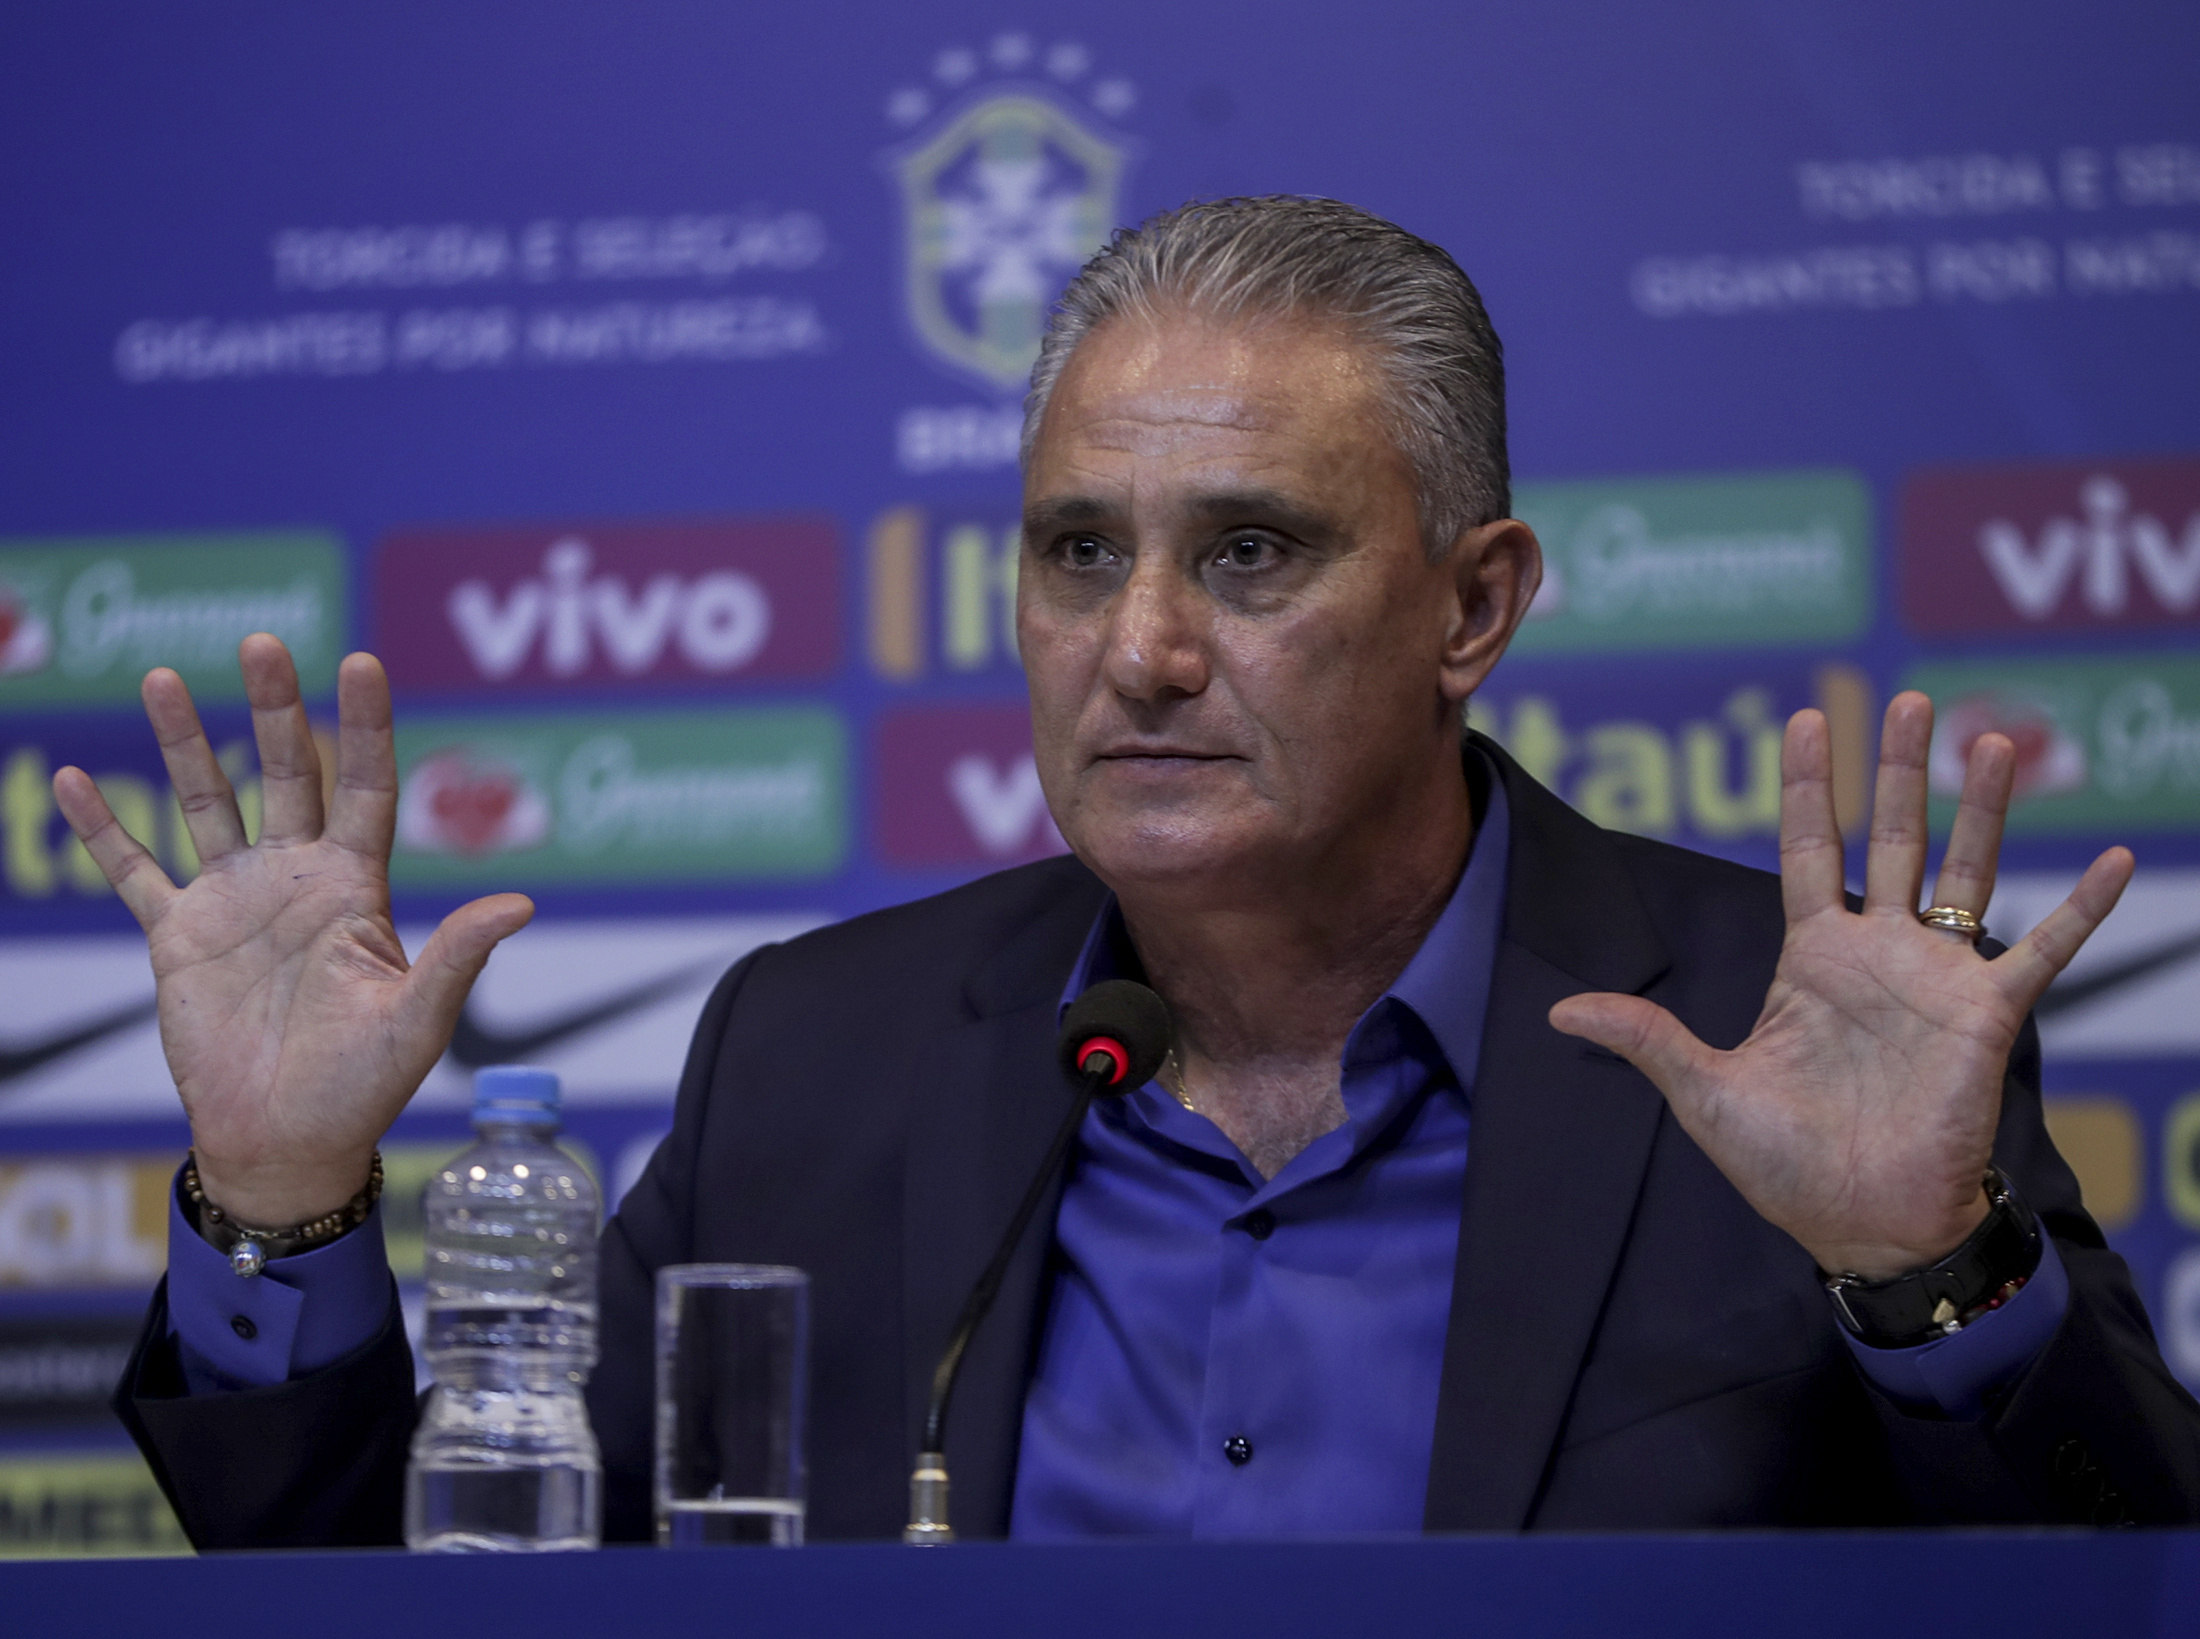 Arthur y Neto, novedades en primera convocatoria en el Brasil de Tite tras el Mundial de Rusia